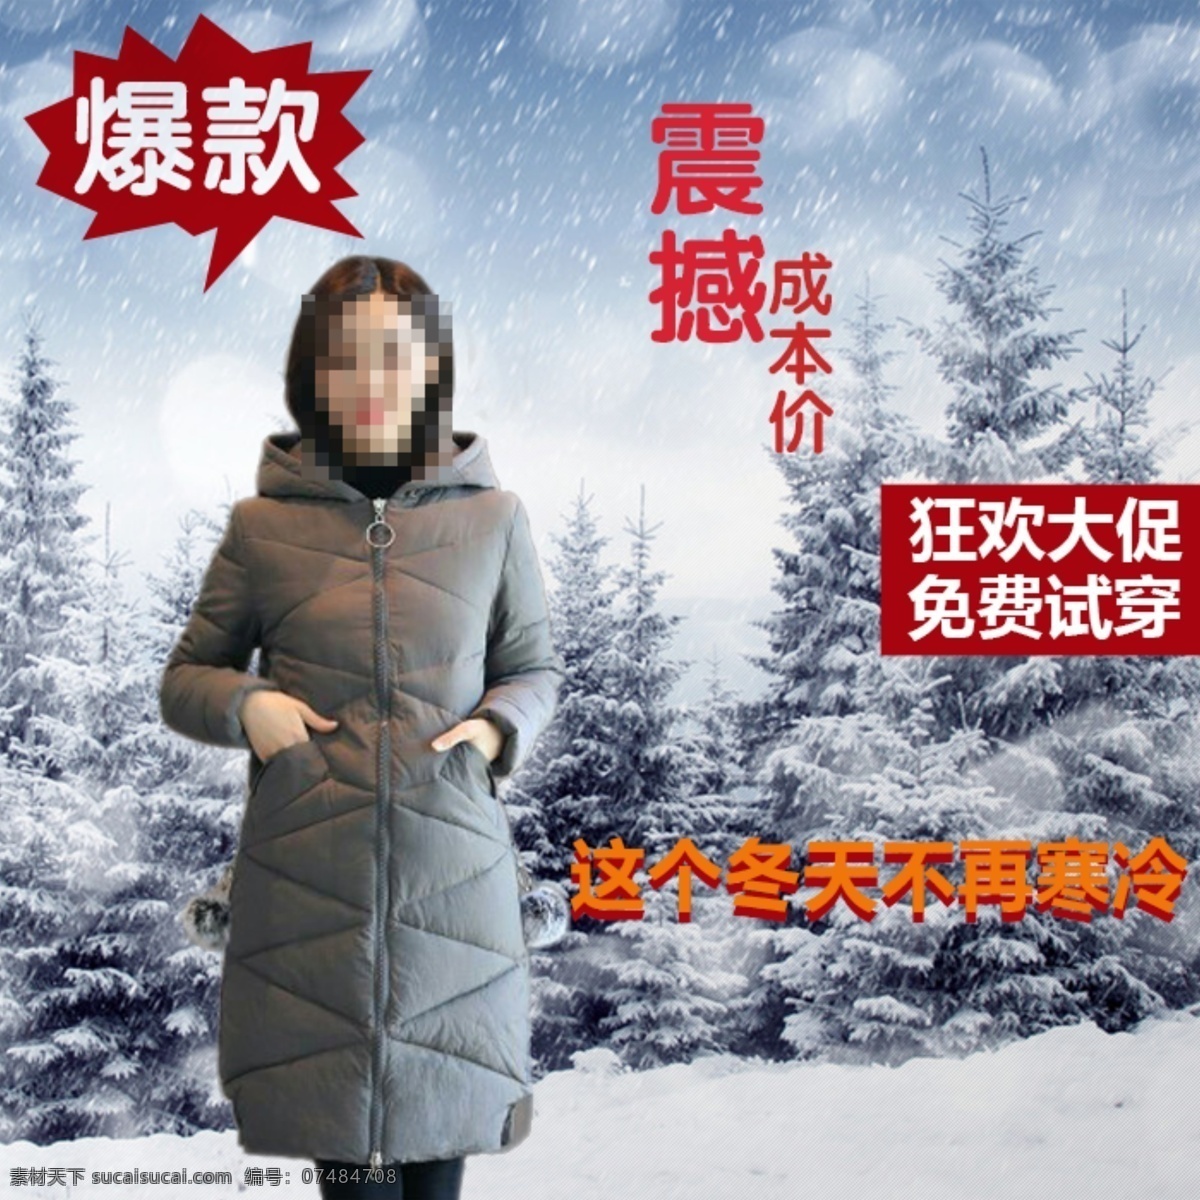 女 冬装 羽绒服 淘宝 海报 女冬装 狂欢大促 免费试穿 这个 冬天 不再 寒冷